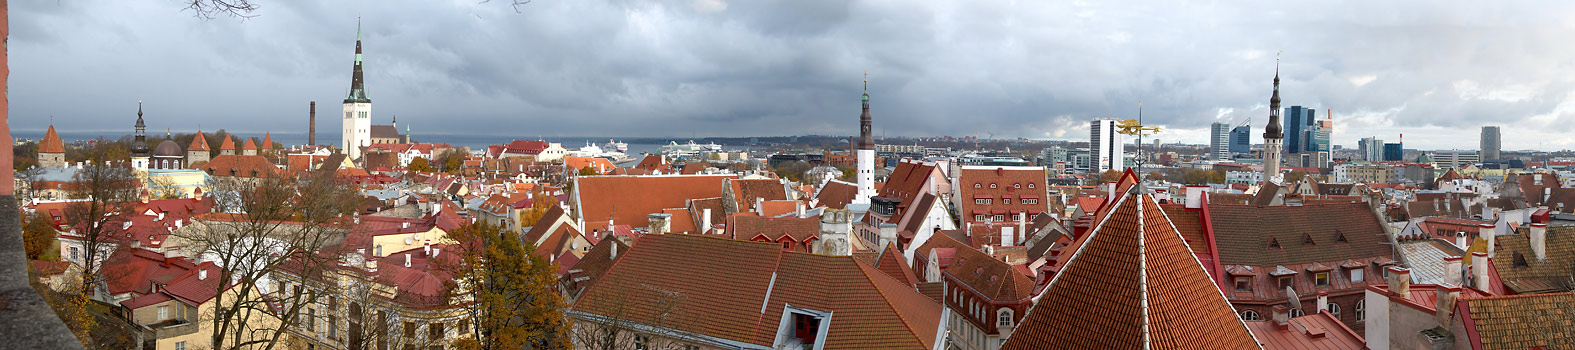 Panorama of old Tallinn - Tallinn